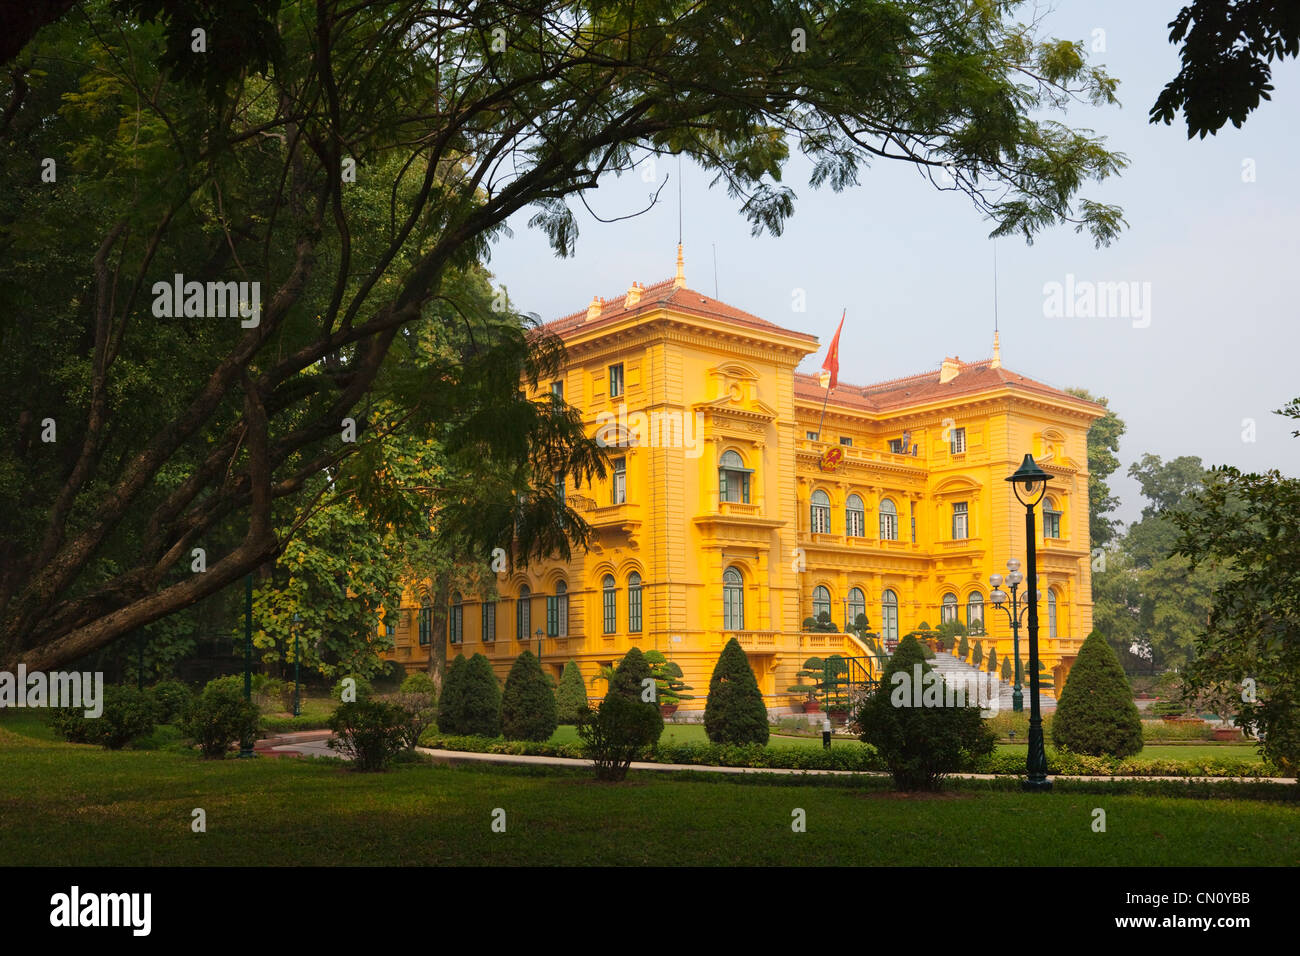 Ho Chi Min's presidential palace, Hanoi, Vietnam Stock Photo